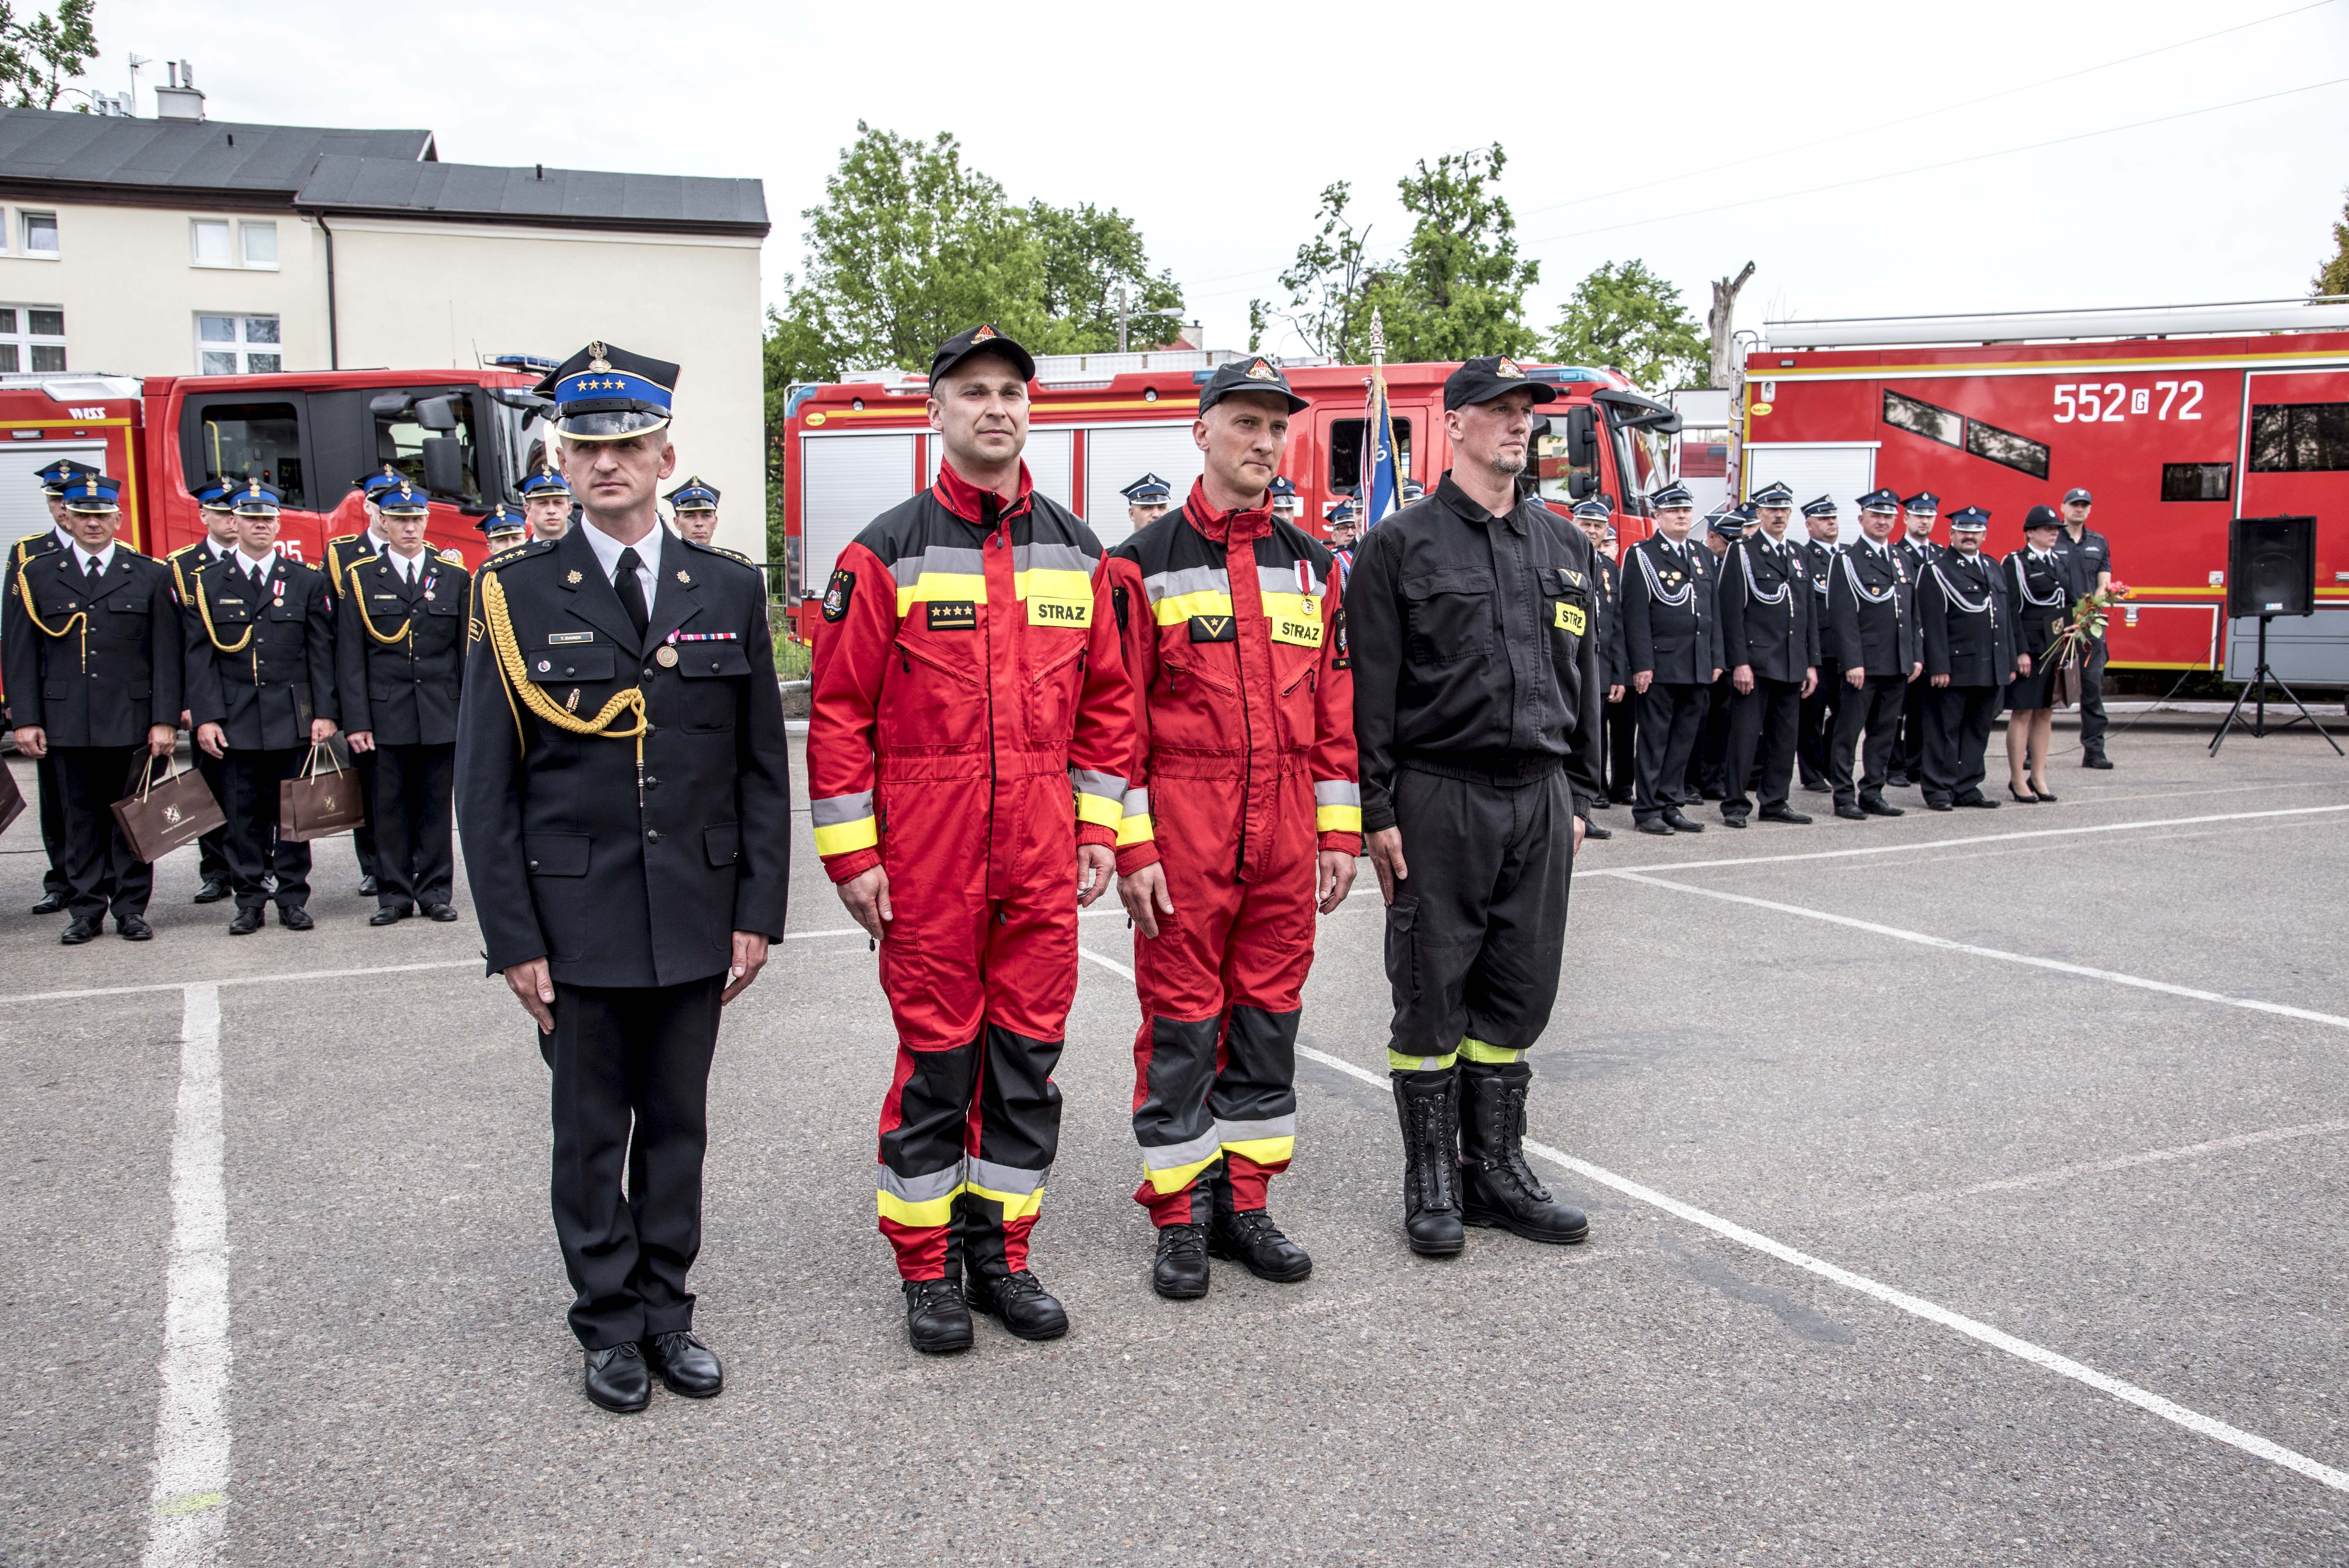 Rumscy strażacy, którzy zostali wyróżnieni